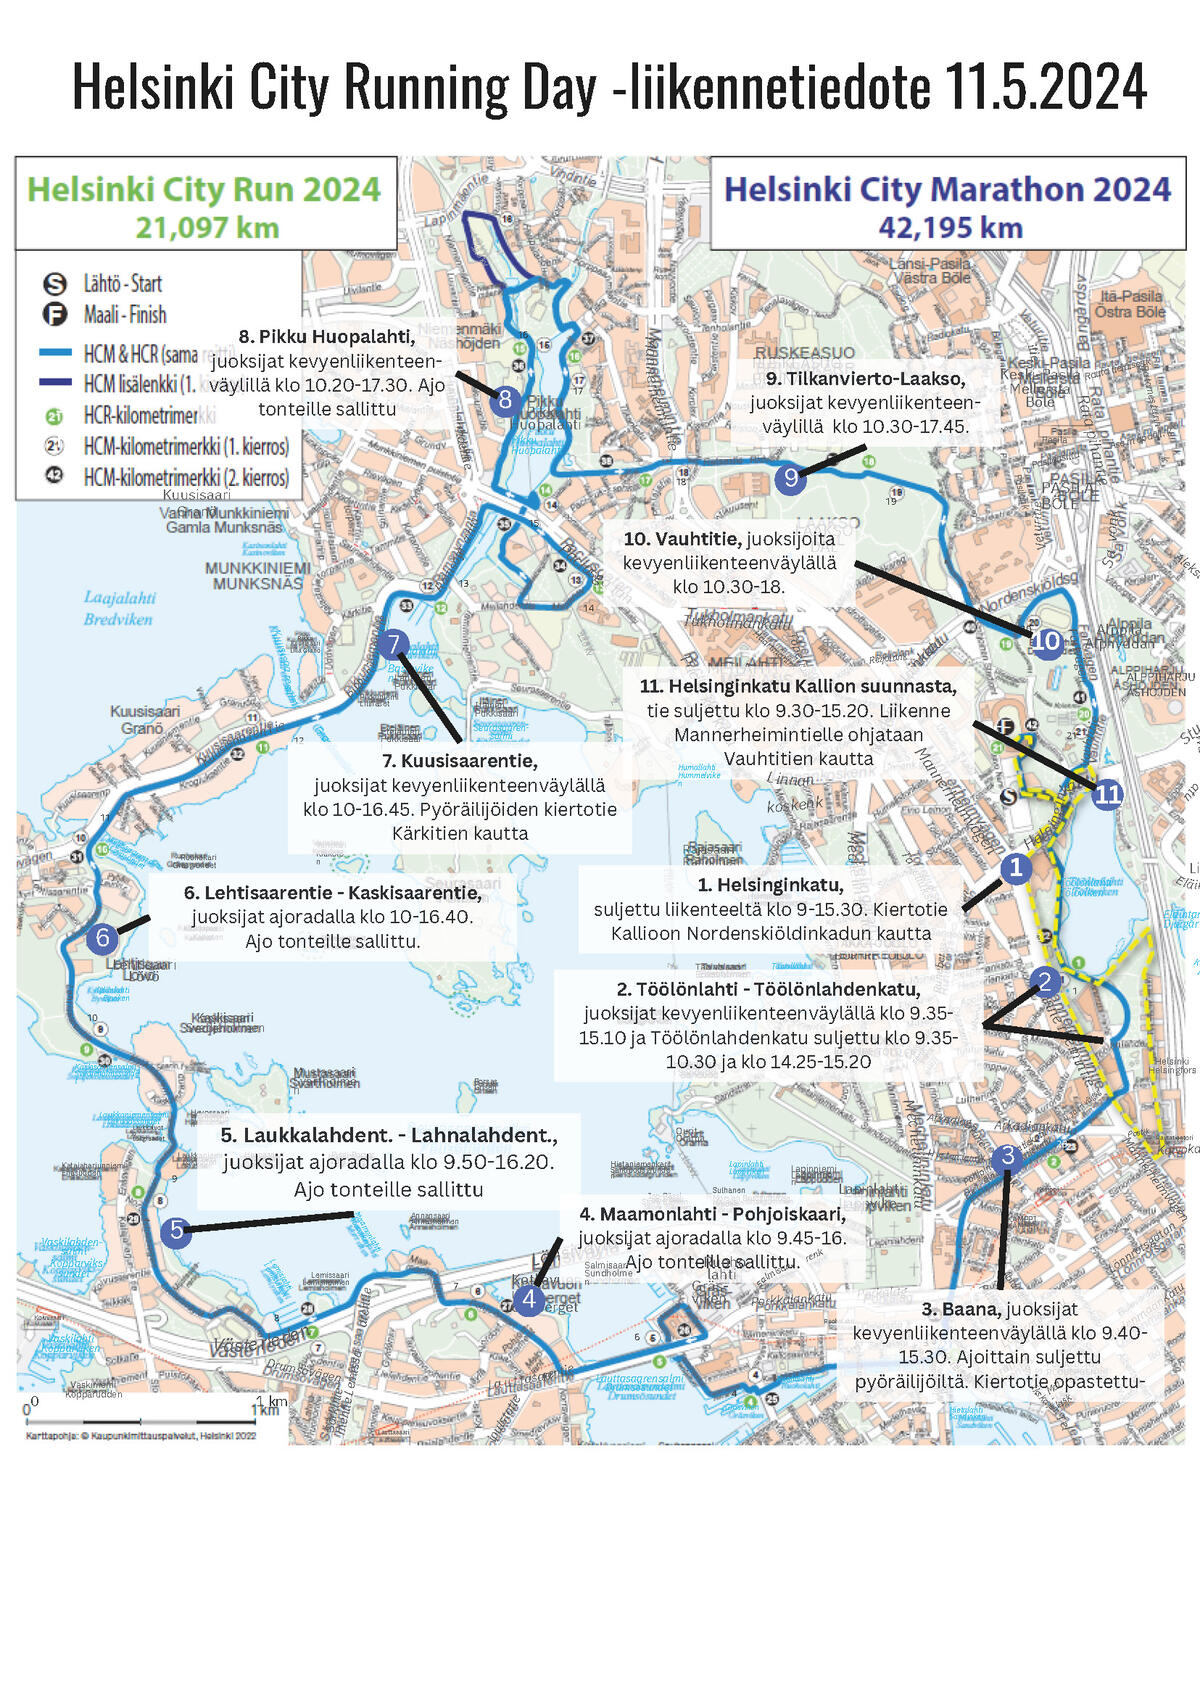 Kartta liikennejärjestelyistä. Kuva: HCRD-tapahtumaorganisaatio 